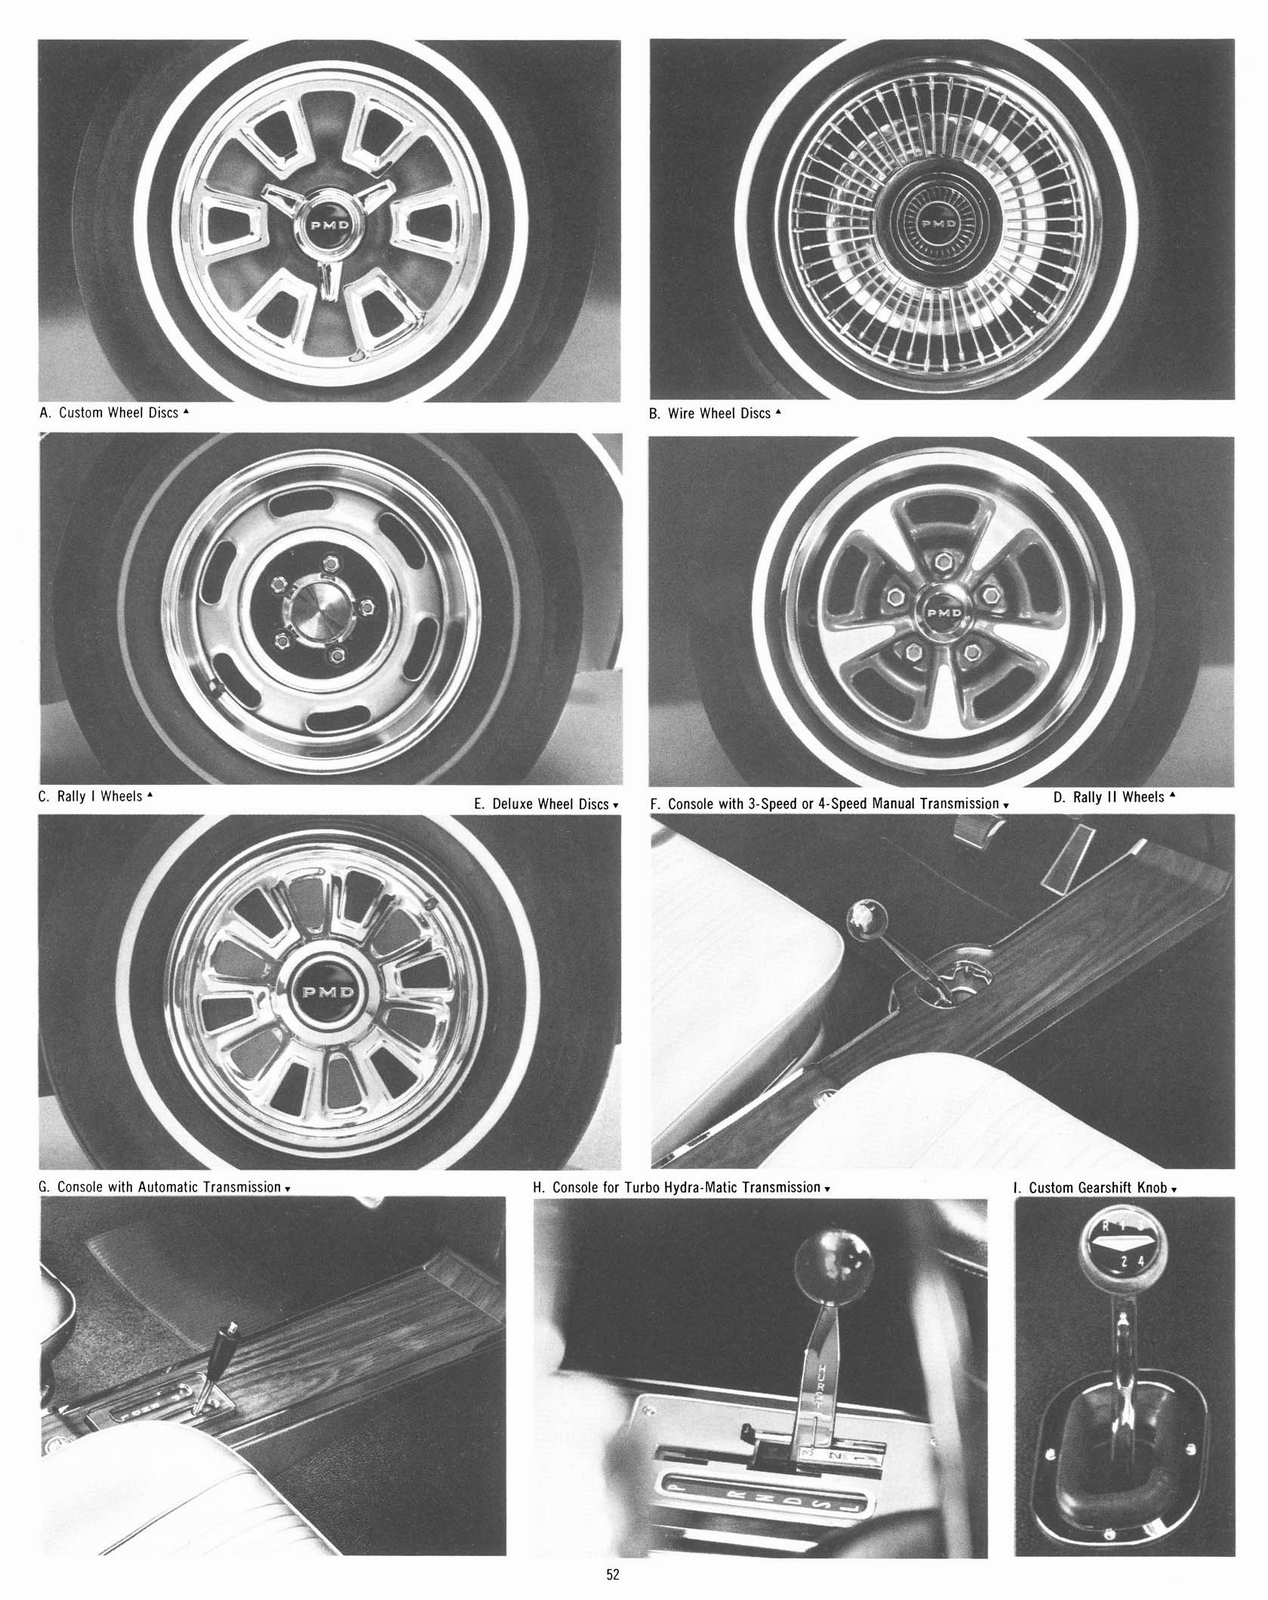 n_1967 Pontiac Accessories-52.jpg